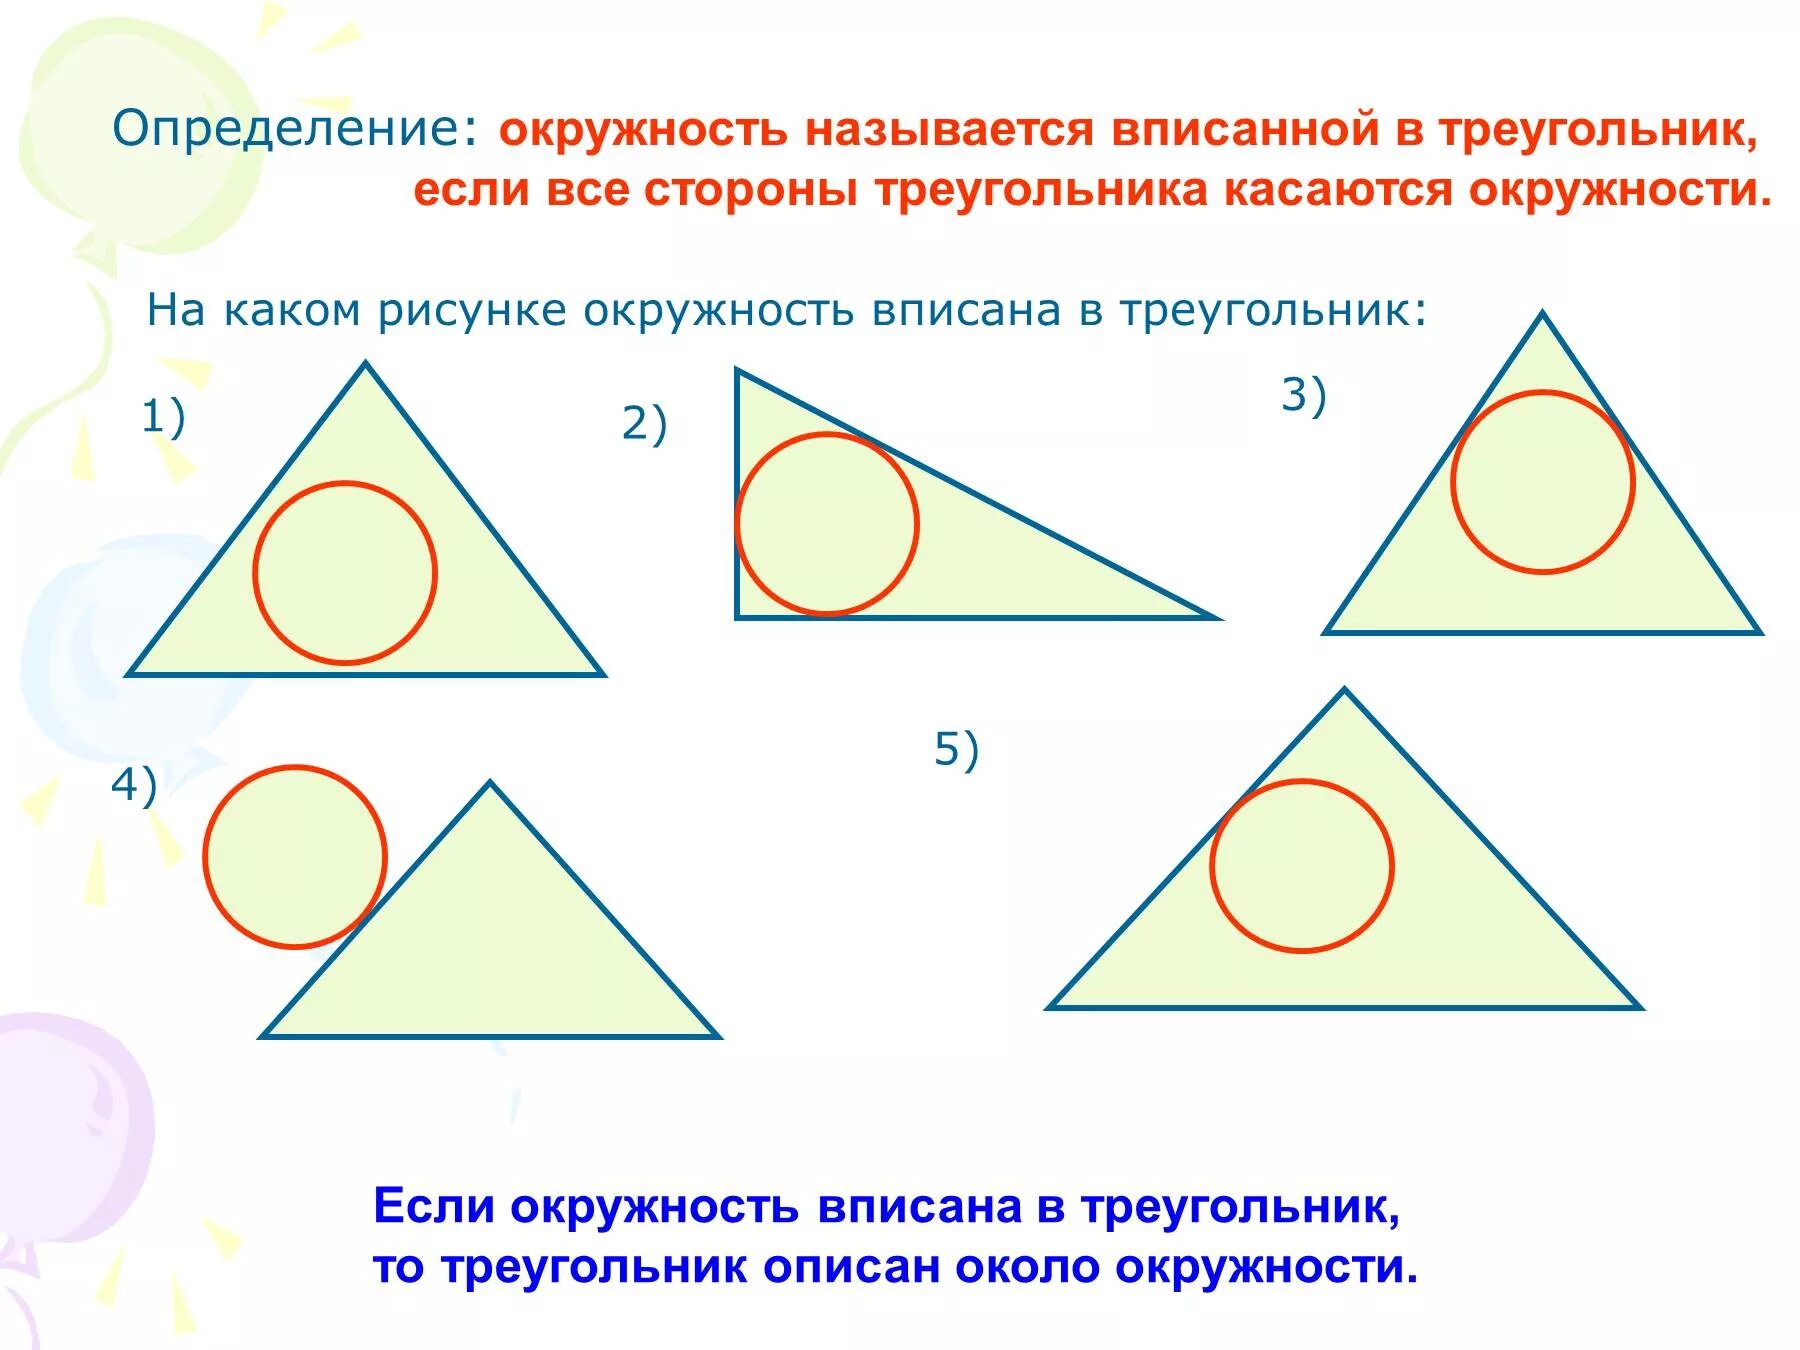 Какая окружность называется вписанной в треугольник. Вписанная окружность. Вписписанная окружность. Окружность вписанная в треугольник. Окружность называется вписанной в треугольник.